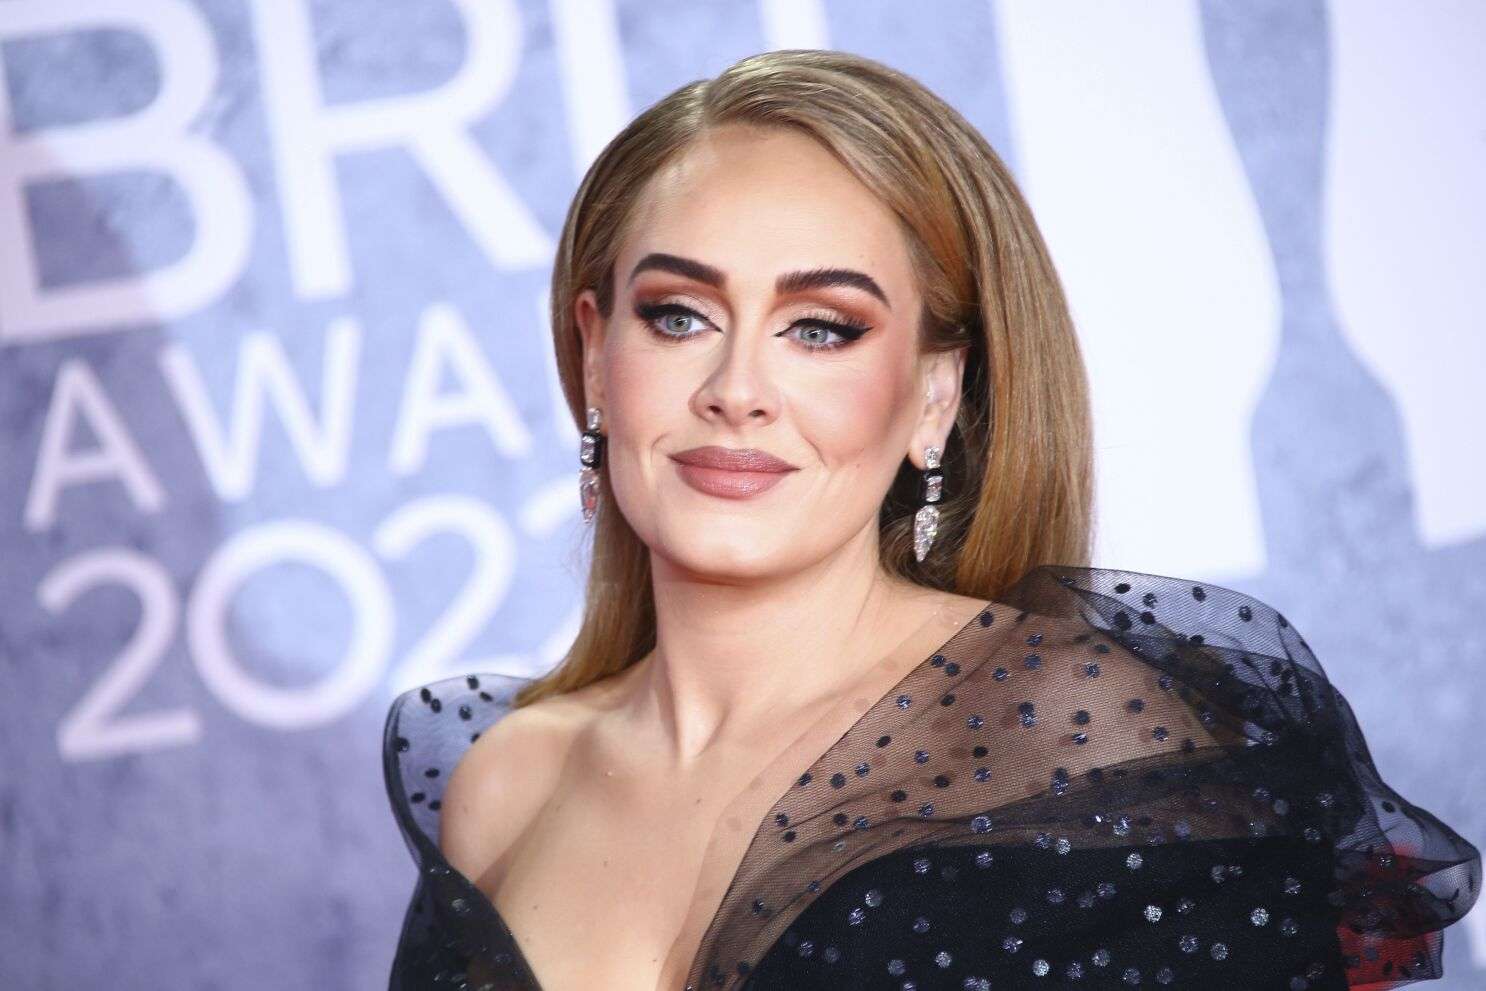 Adele's Image